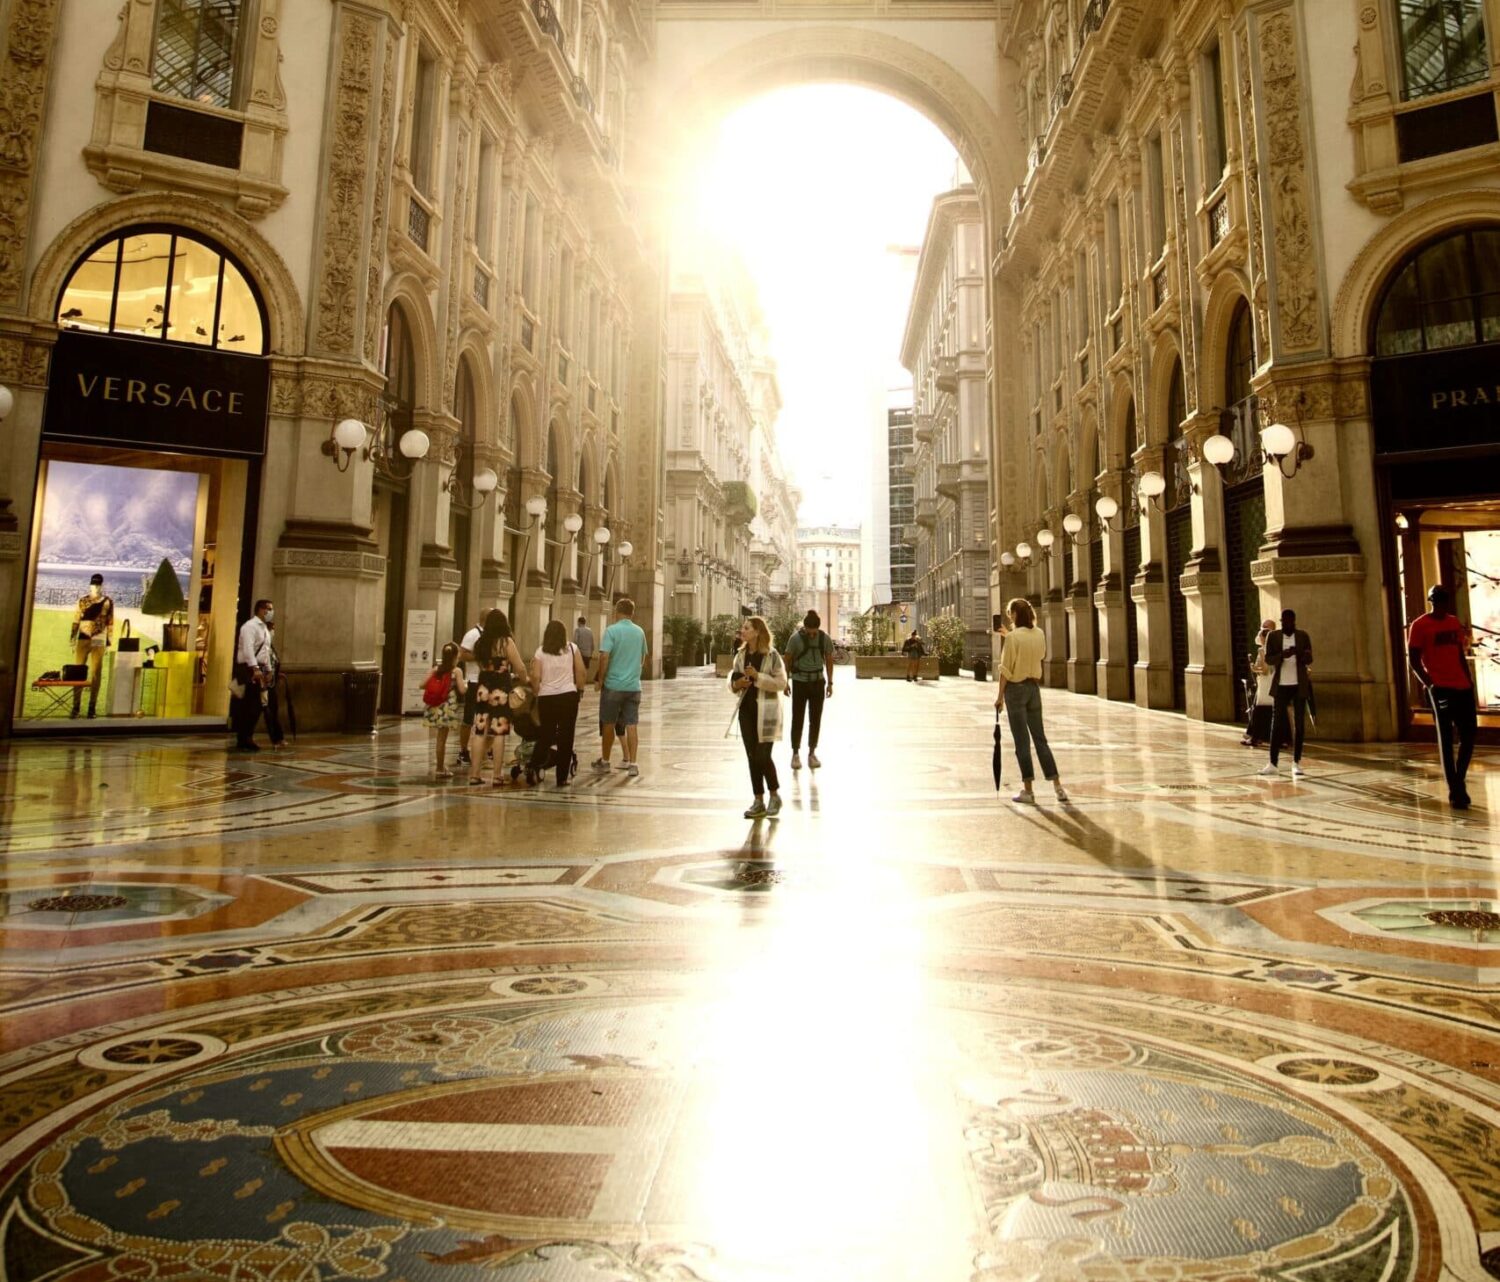 Pessoas passeando na Galleria Vittorio Emanuele II, com um raio de sol entrando no teto de vidro e refletindo no chão do local que é cheio de pinturas clássicas